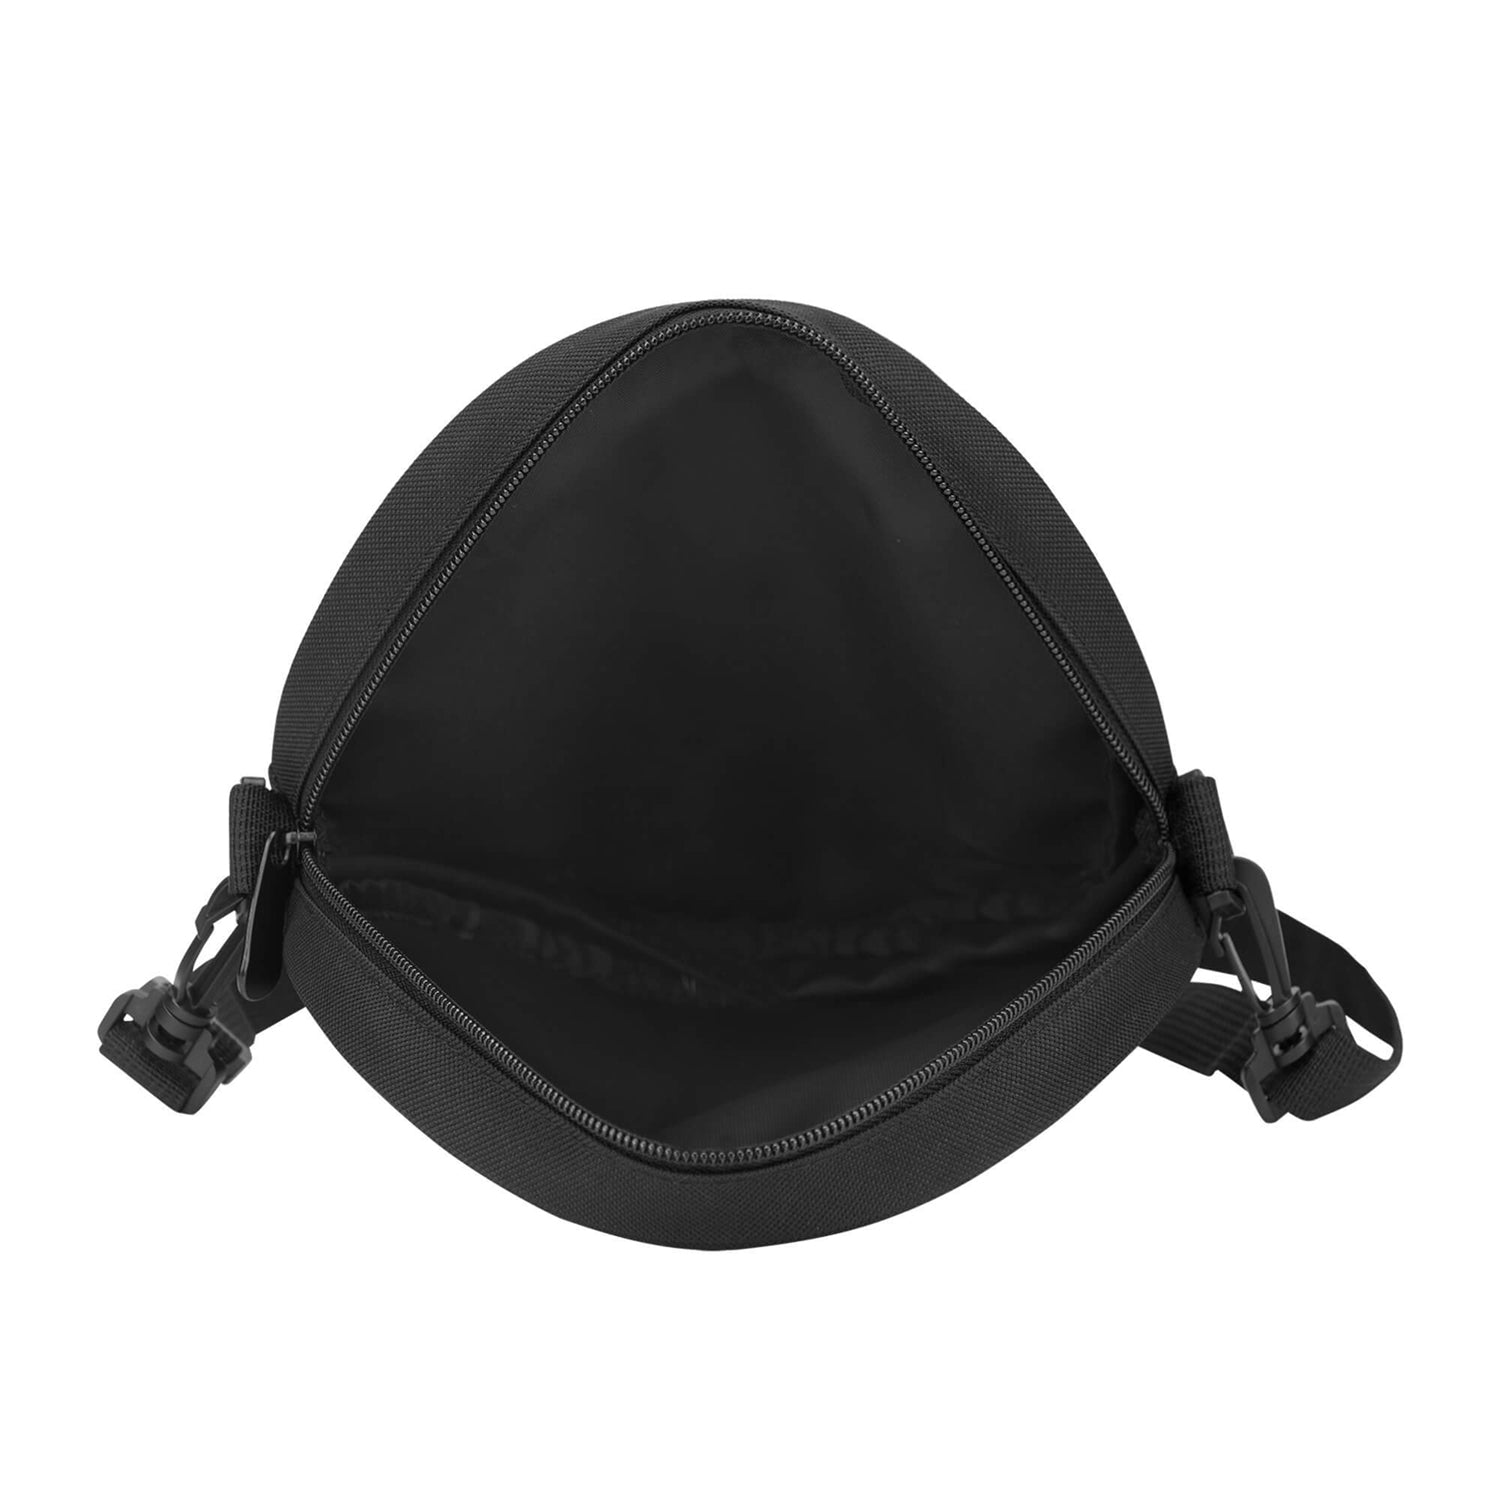 donachie-of-brockloch-tartan-round-satchel-bags